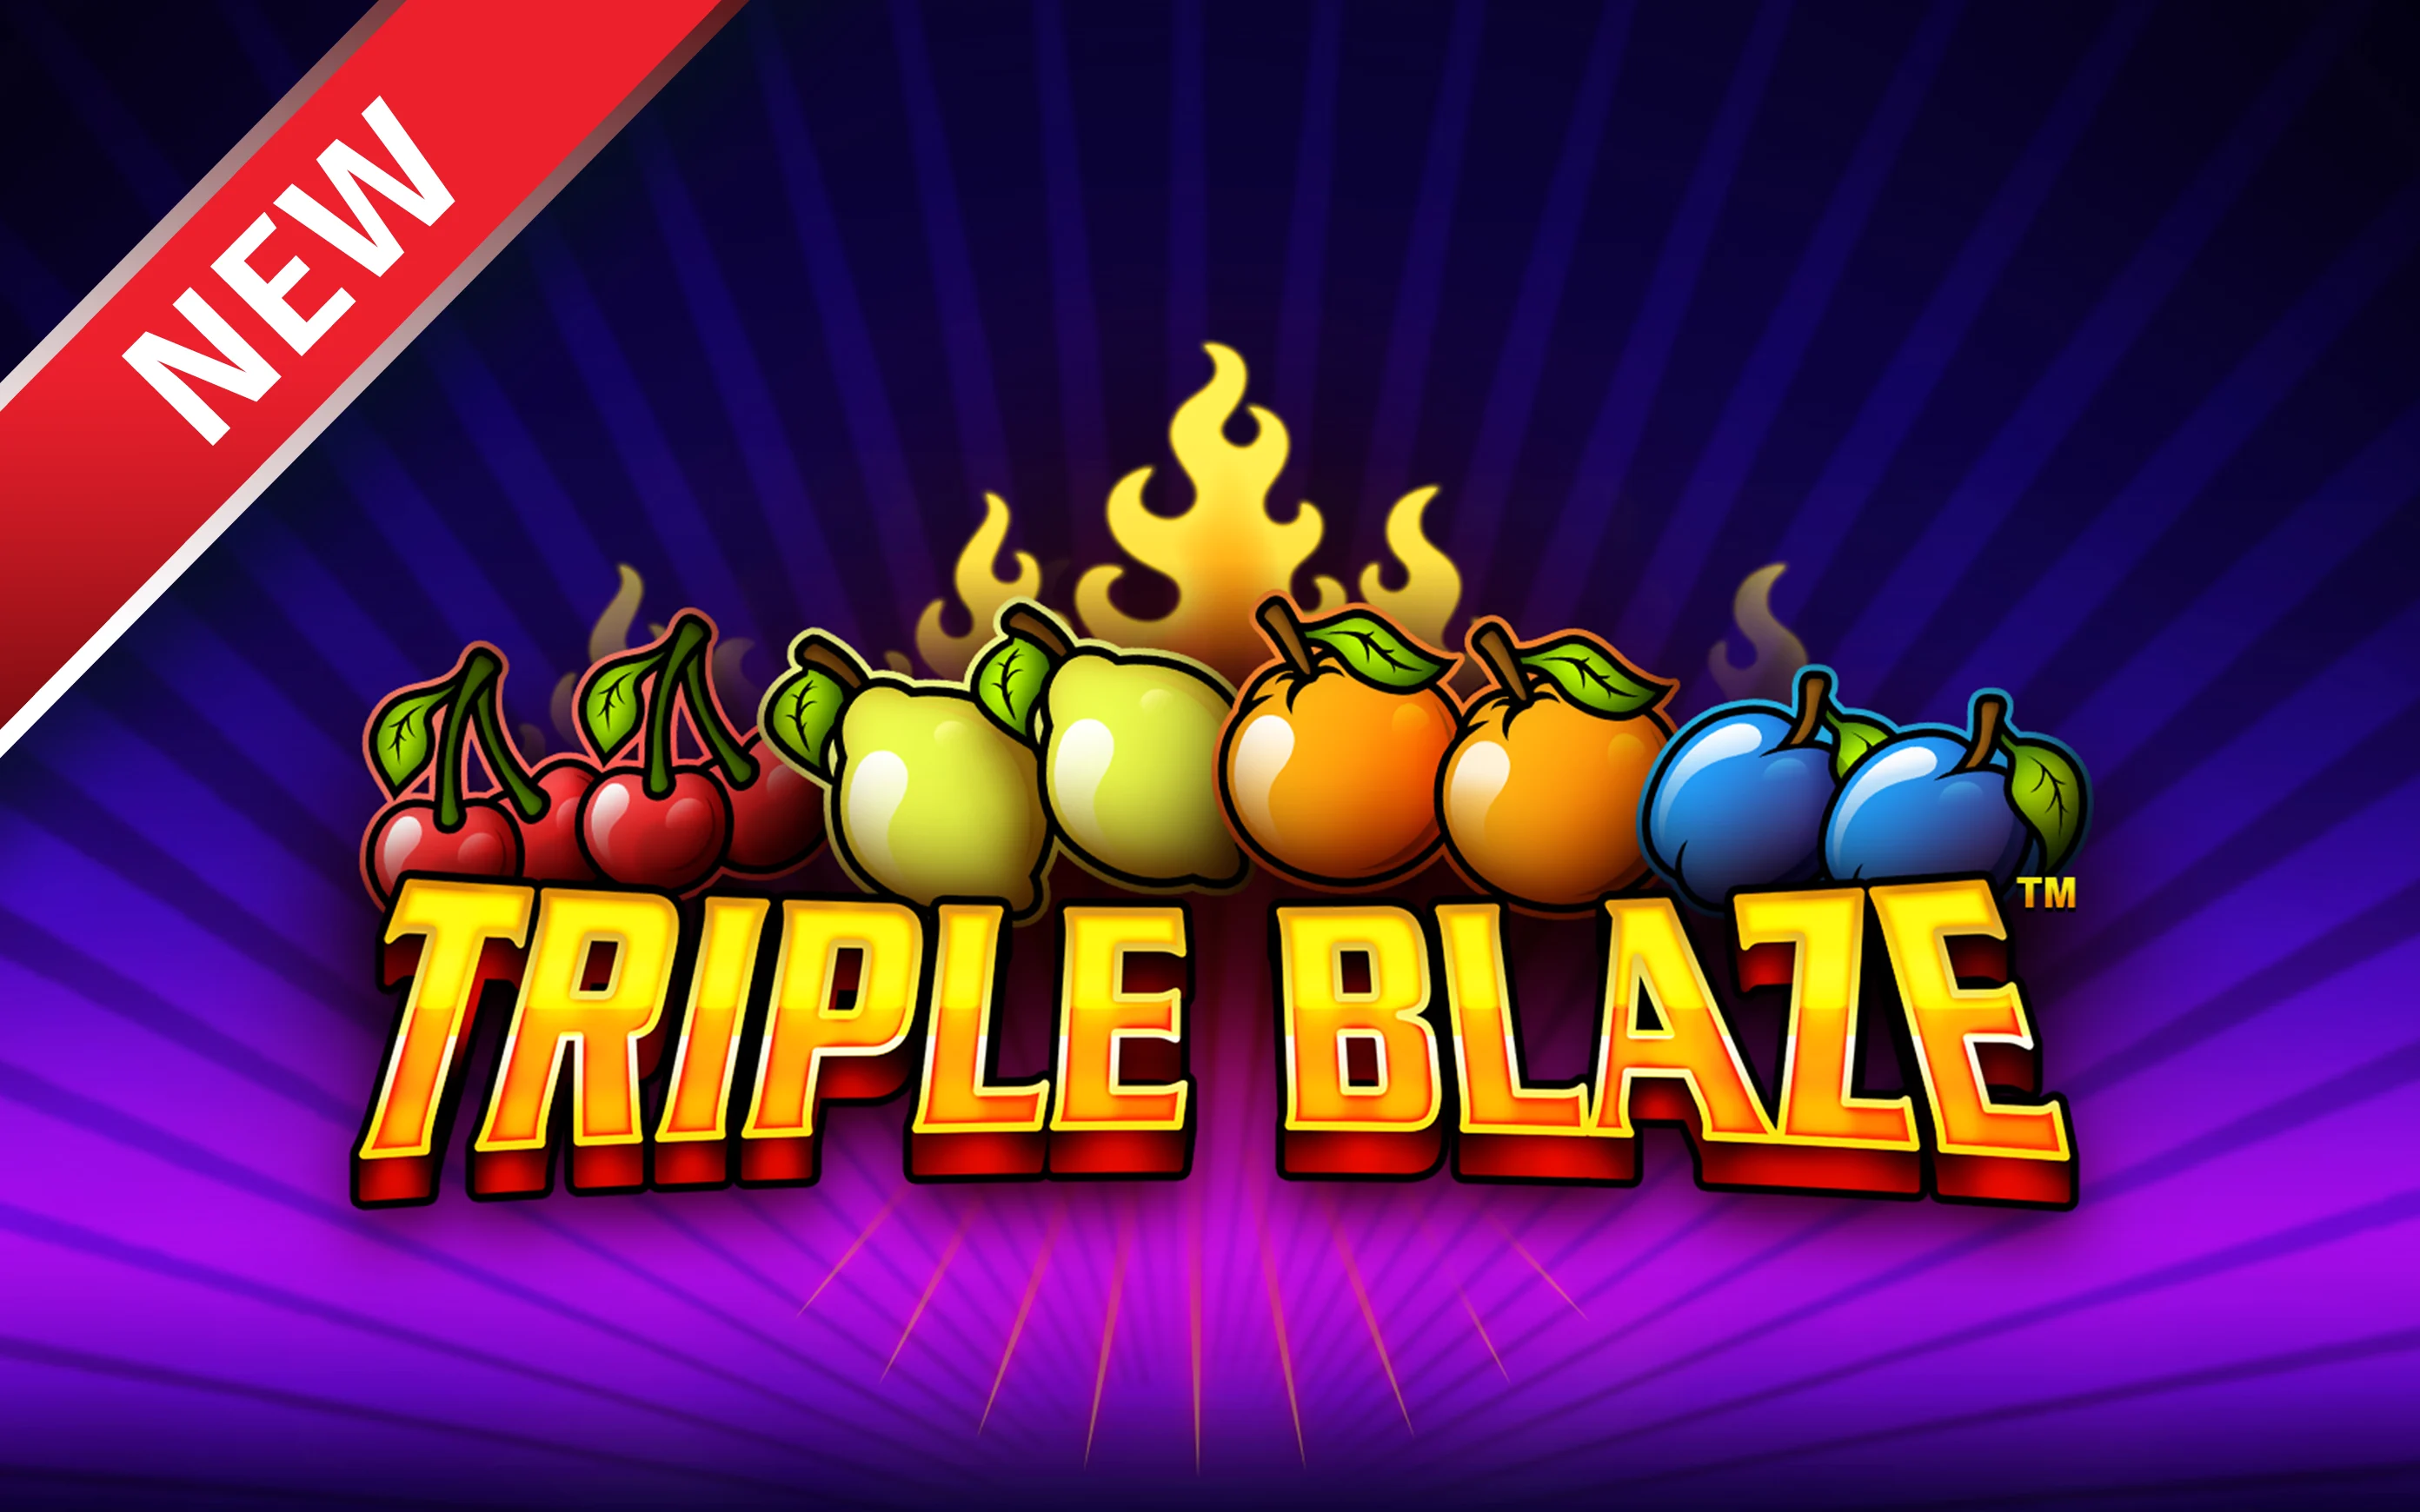 Gioca a Triple Blaze sul casino online Starcasino.be